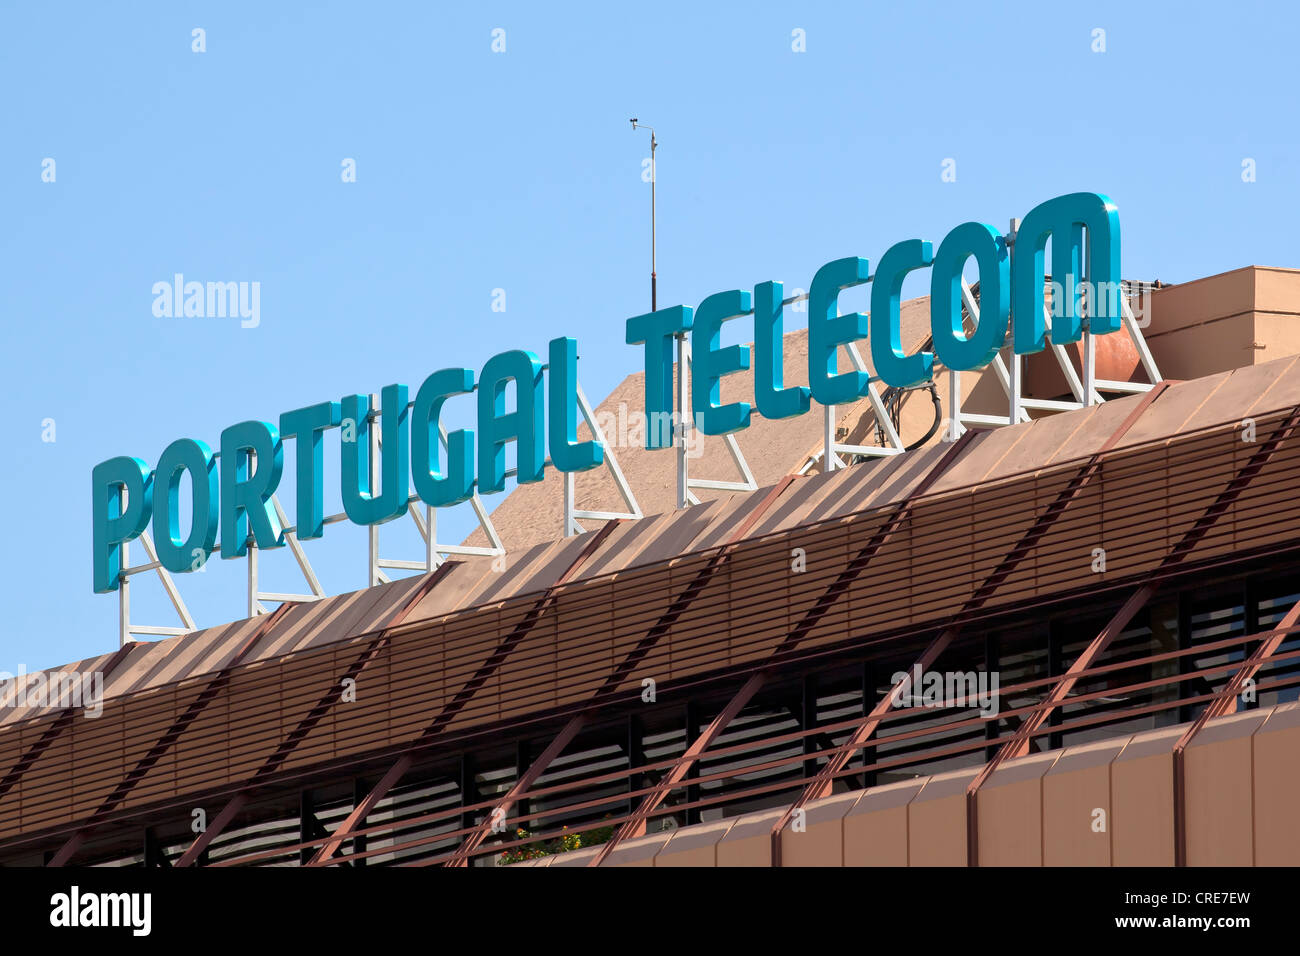 La signalisation sur le siège de l'entreprise de télécommunications portugais, Portugal Telecom, PT, à Lisbonne, Portugal, Europe Banque D'Images